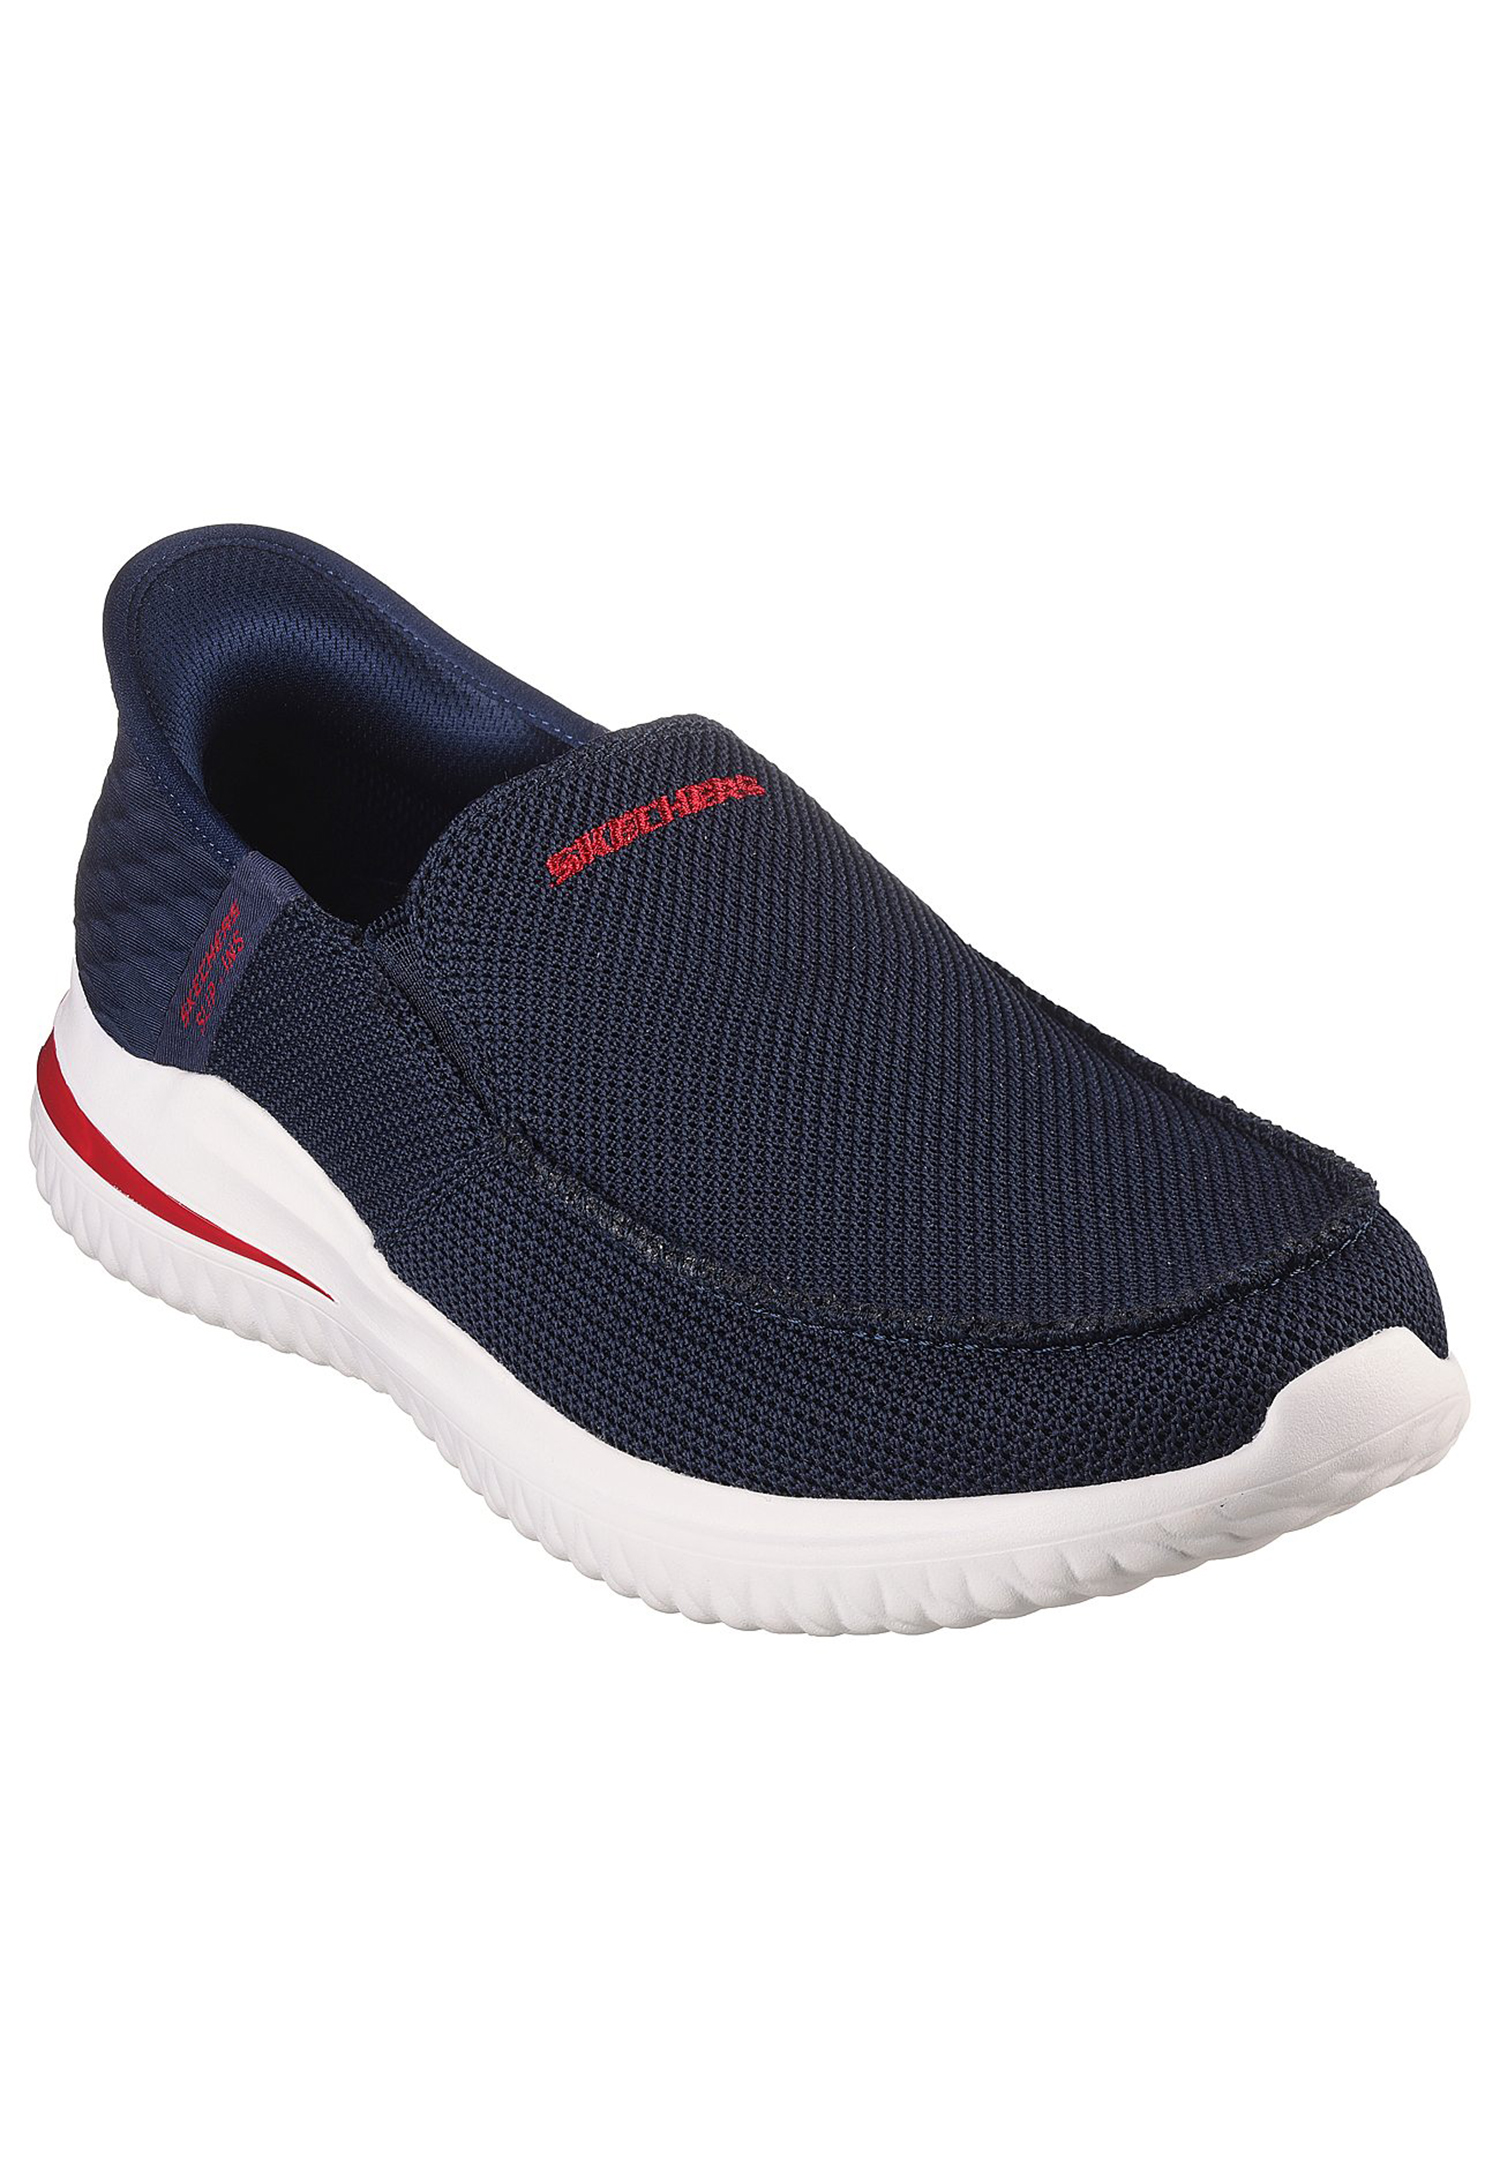 Skechers Delson 3.0 - CABRINO Herren Slip ins - Sneaker Pantolette 210604 NVY navy